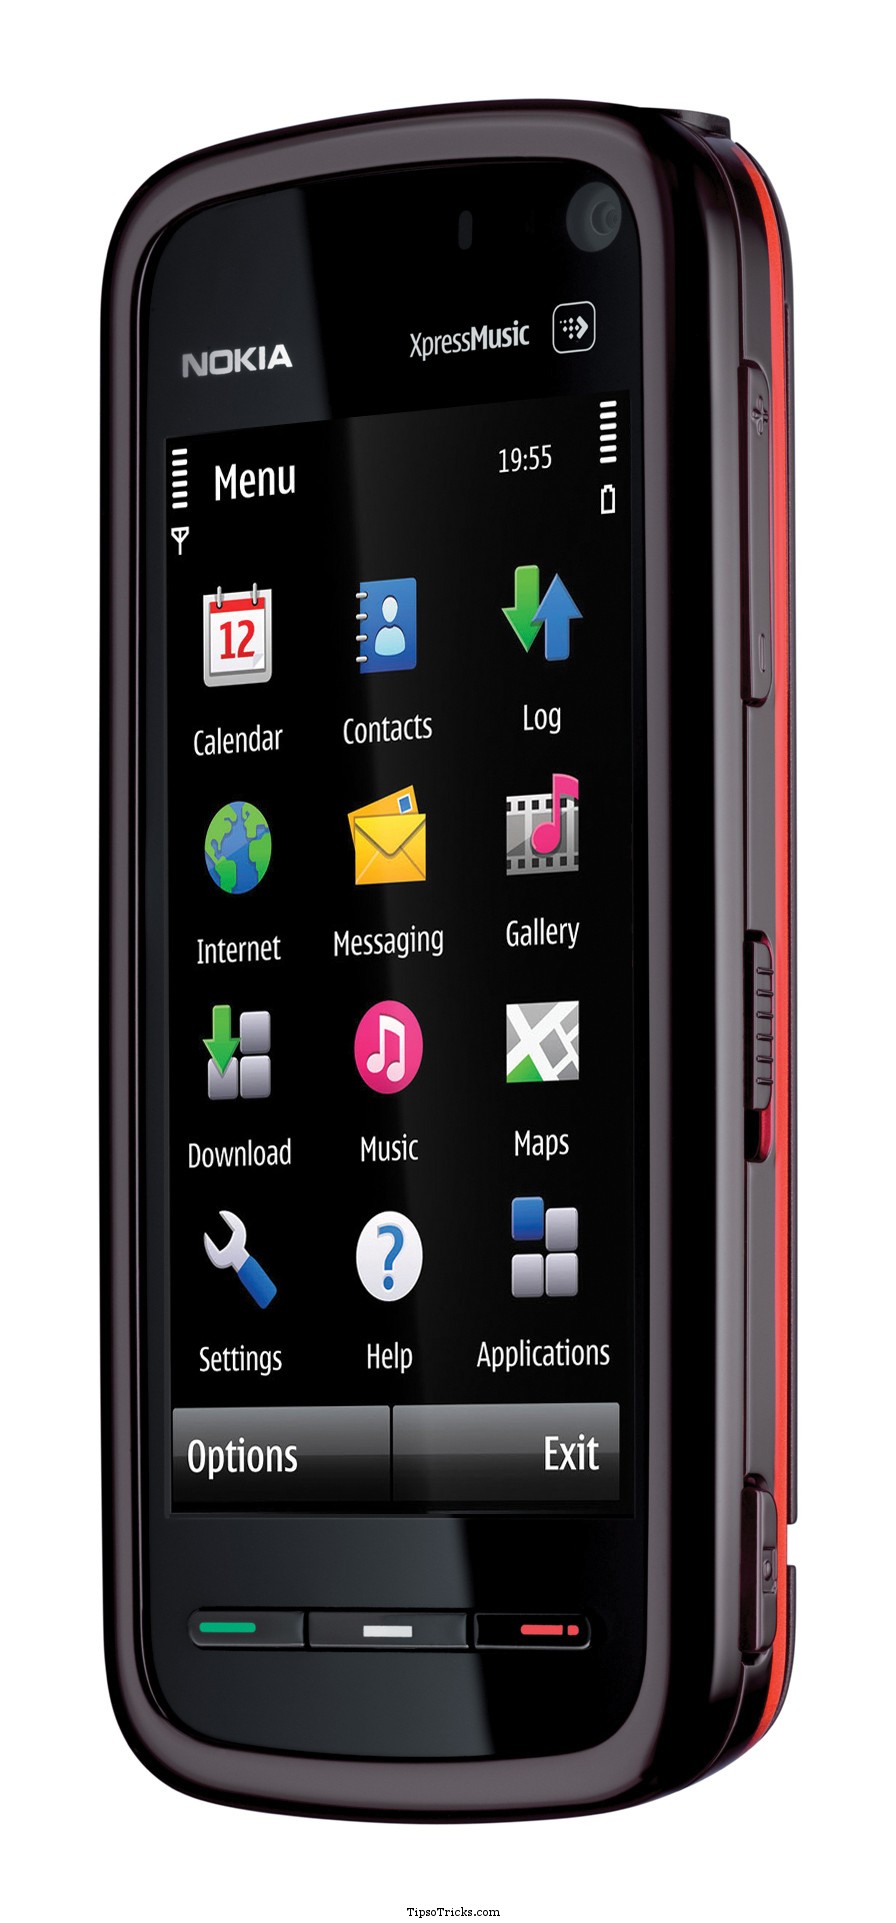 Nokia Pulse para web, Symbian y WP